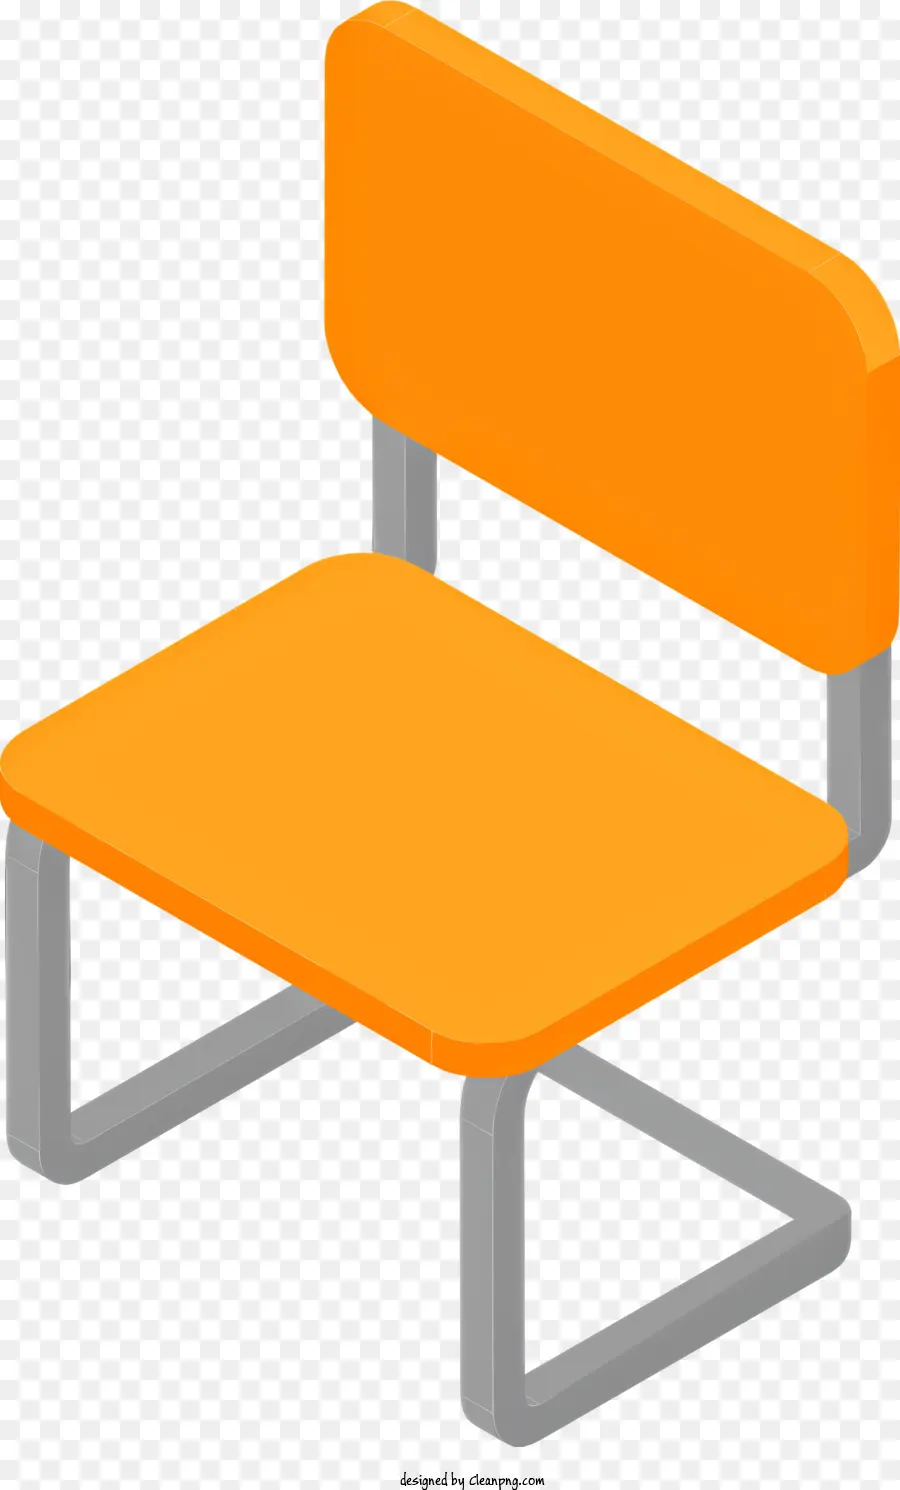 Cartoon Orange Stuhl Rechteckige Stuhl im Hintergrundstuhl offener vorderster Stuhl - Orange minimalistischer Stuhl mit Metallbeinen und Stoffsitz